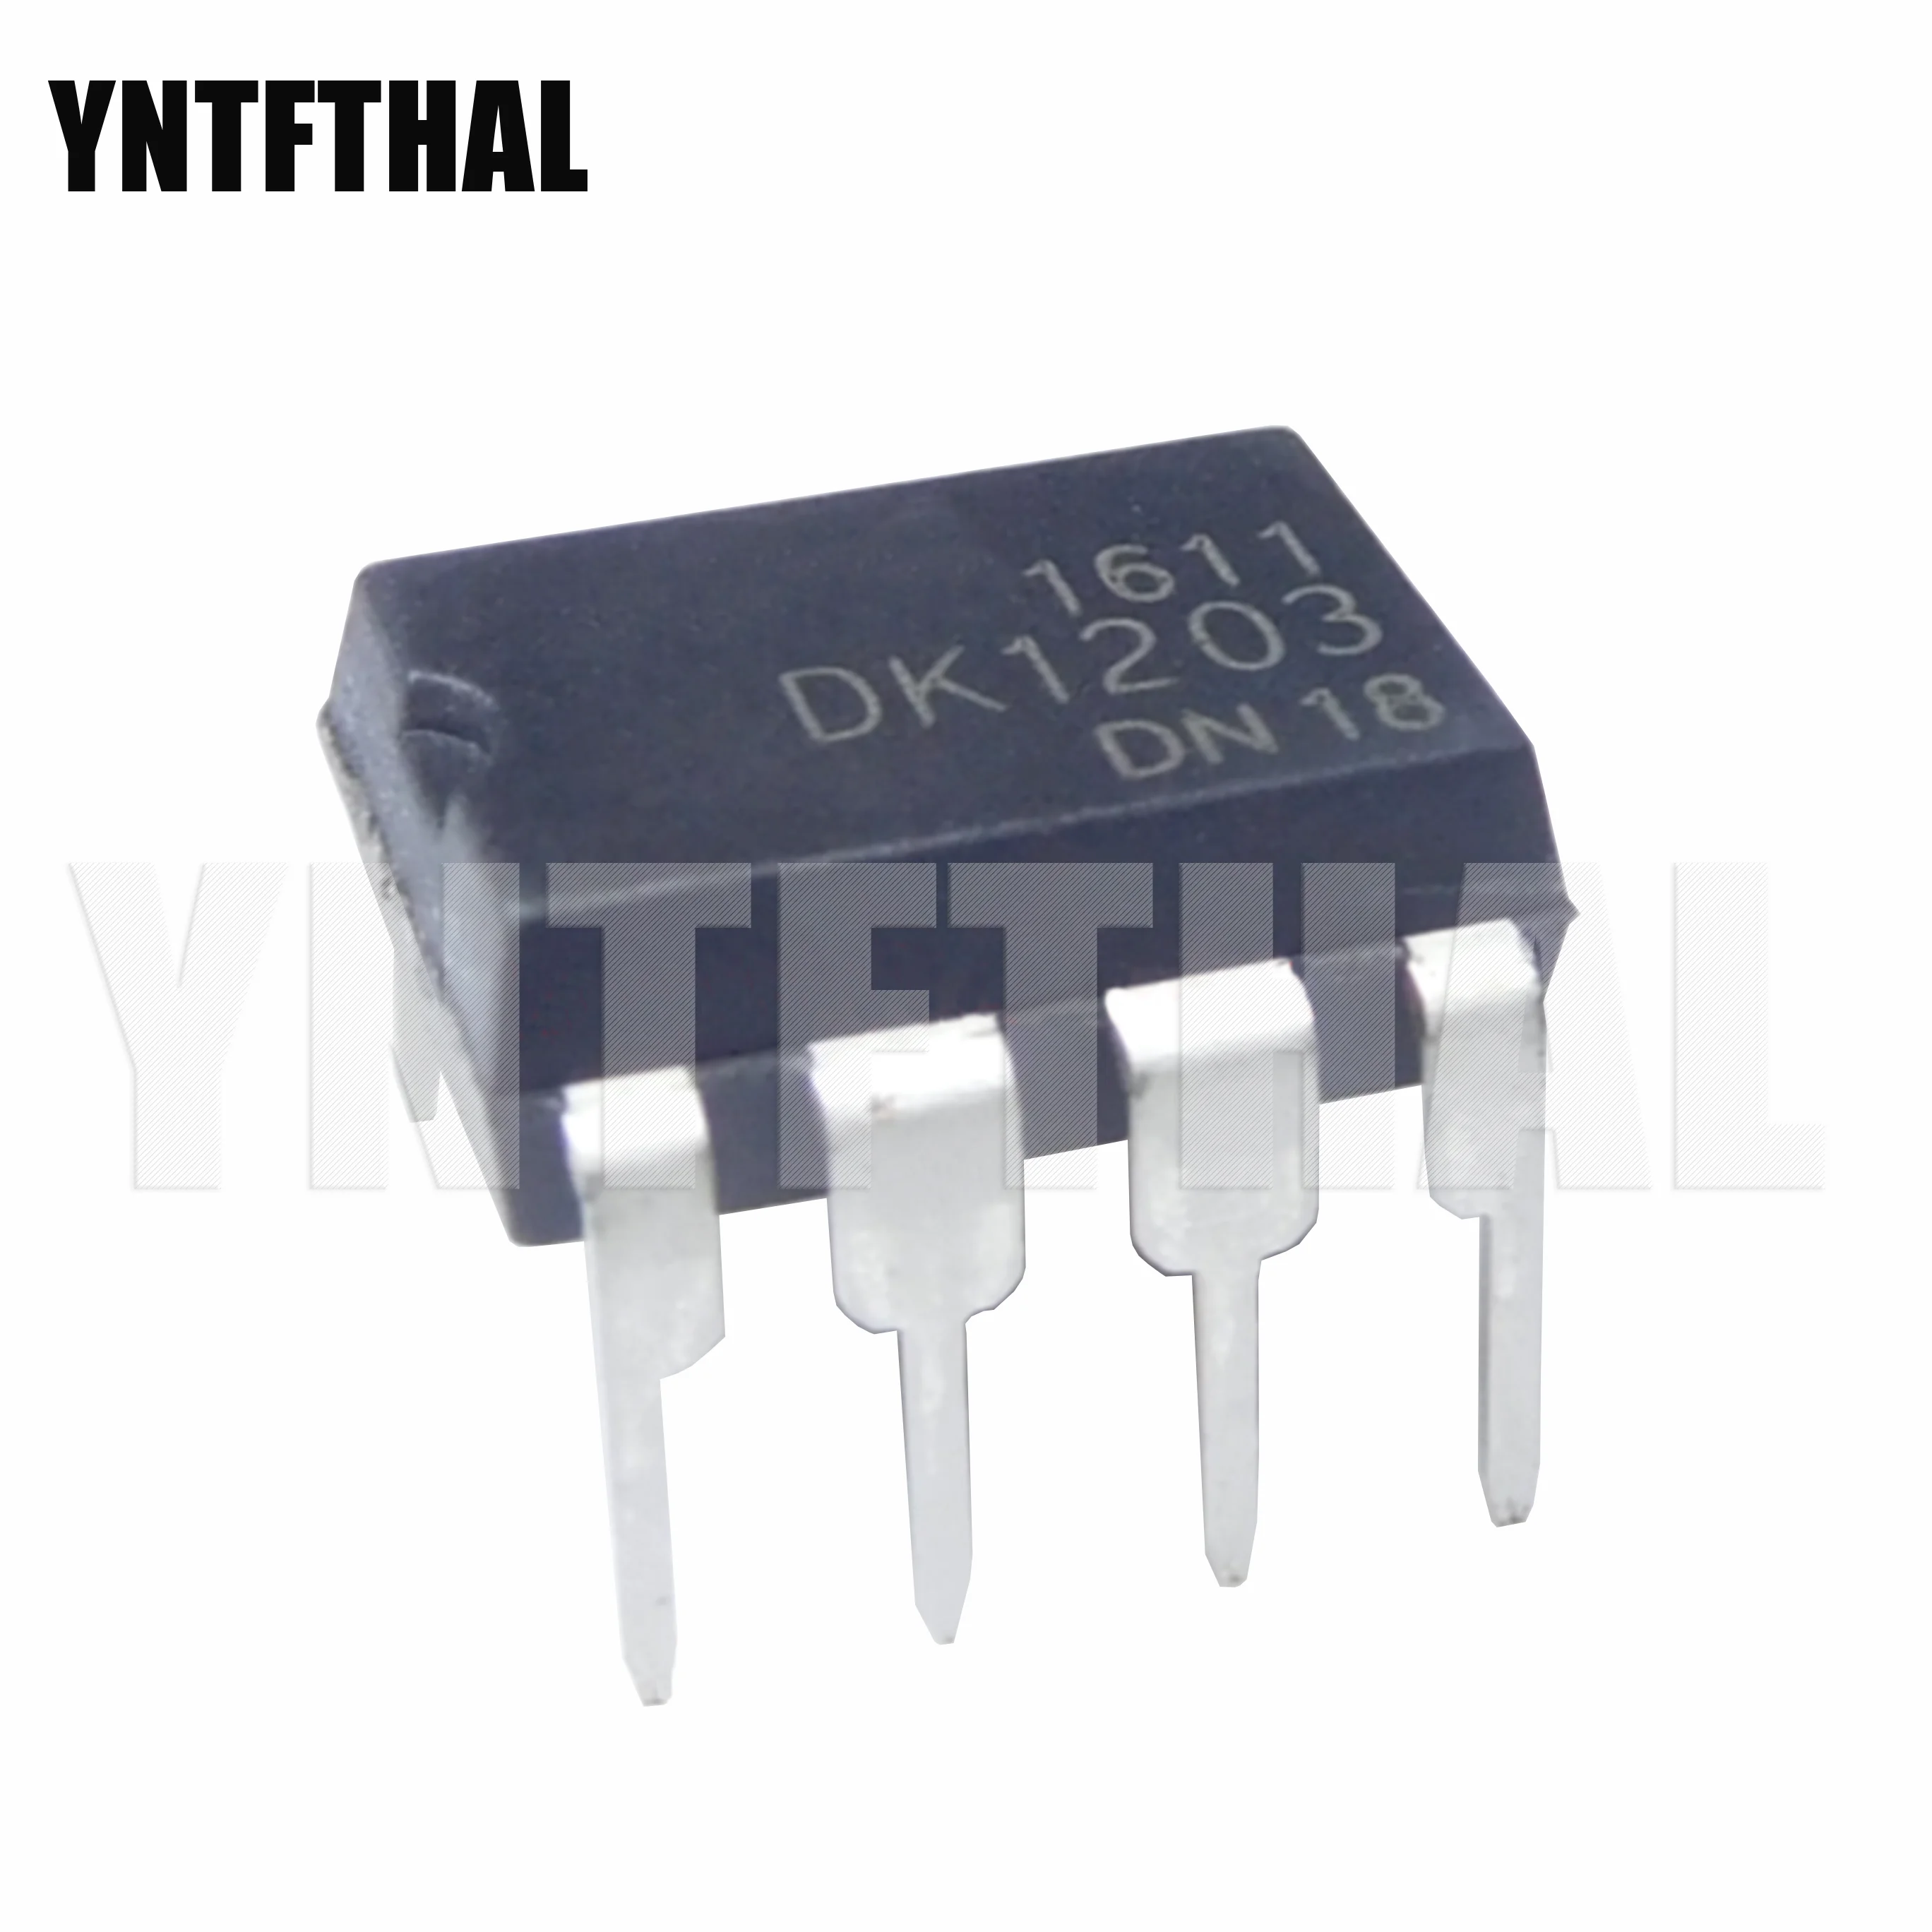 

10 шт., чип управления источником питания DK1203 DIP-8